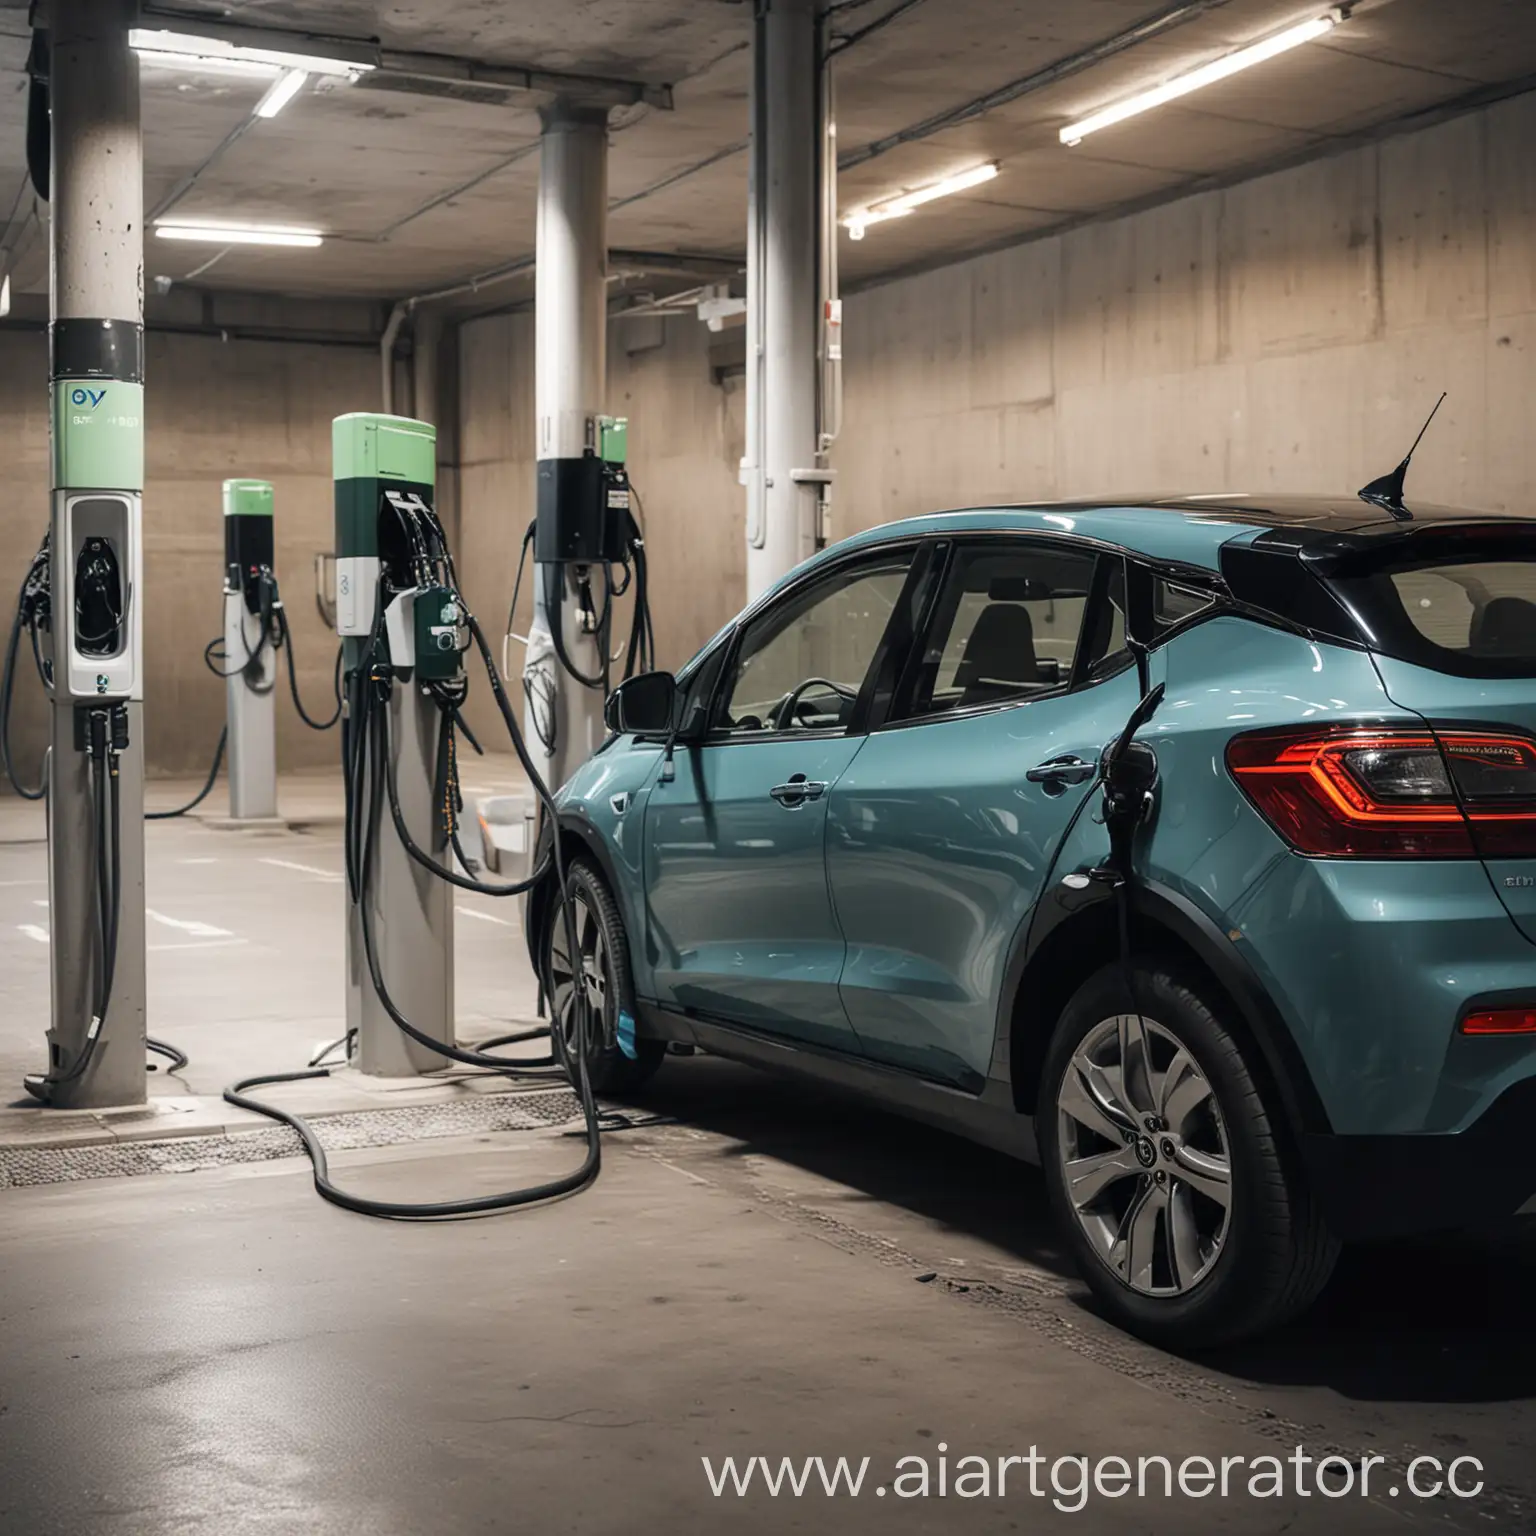 Electric-Car-Refueling-in-Underground-Parking-Garage